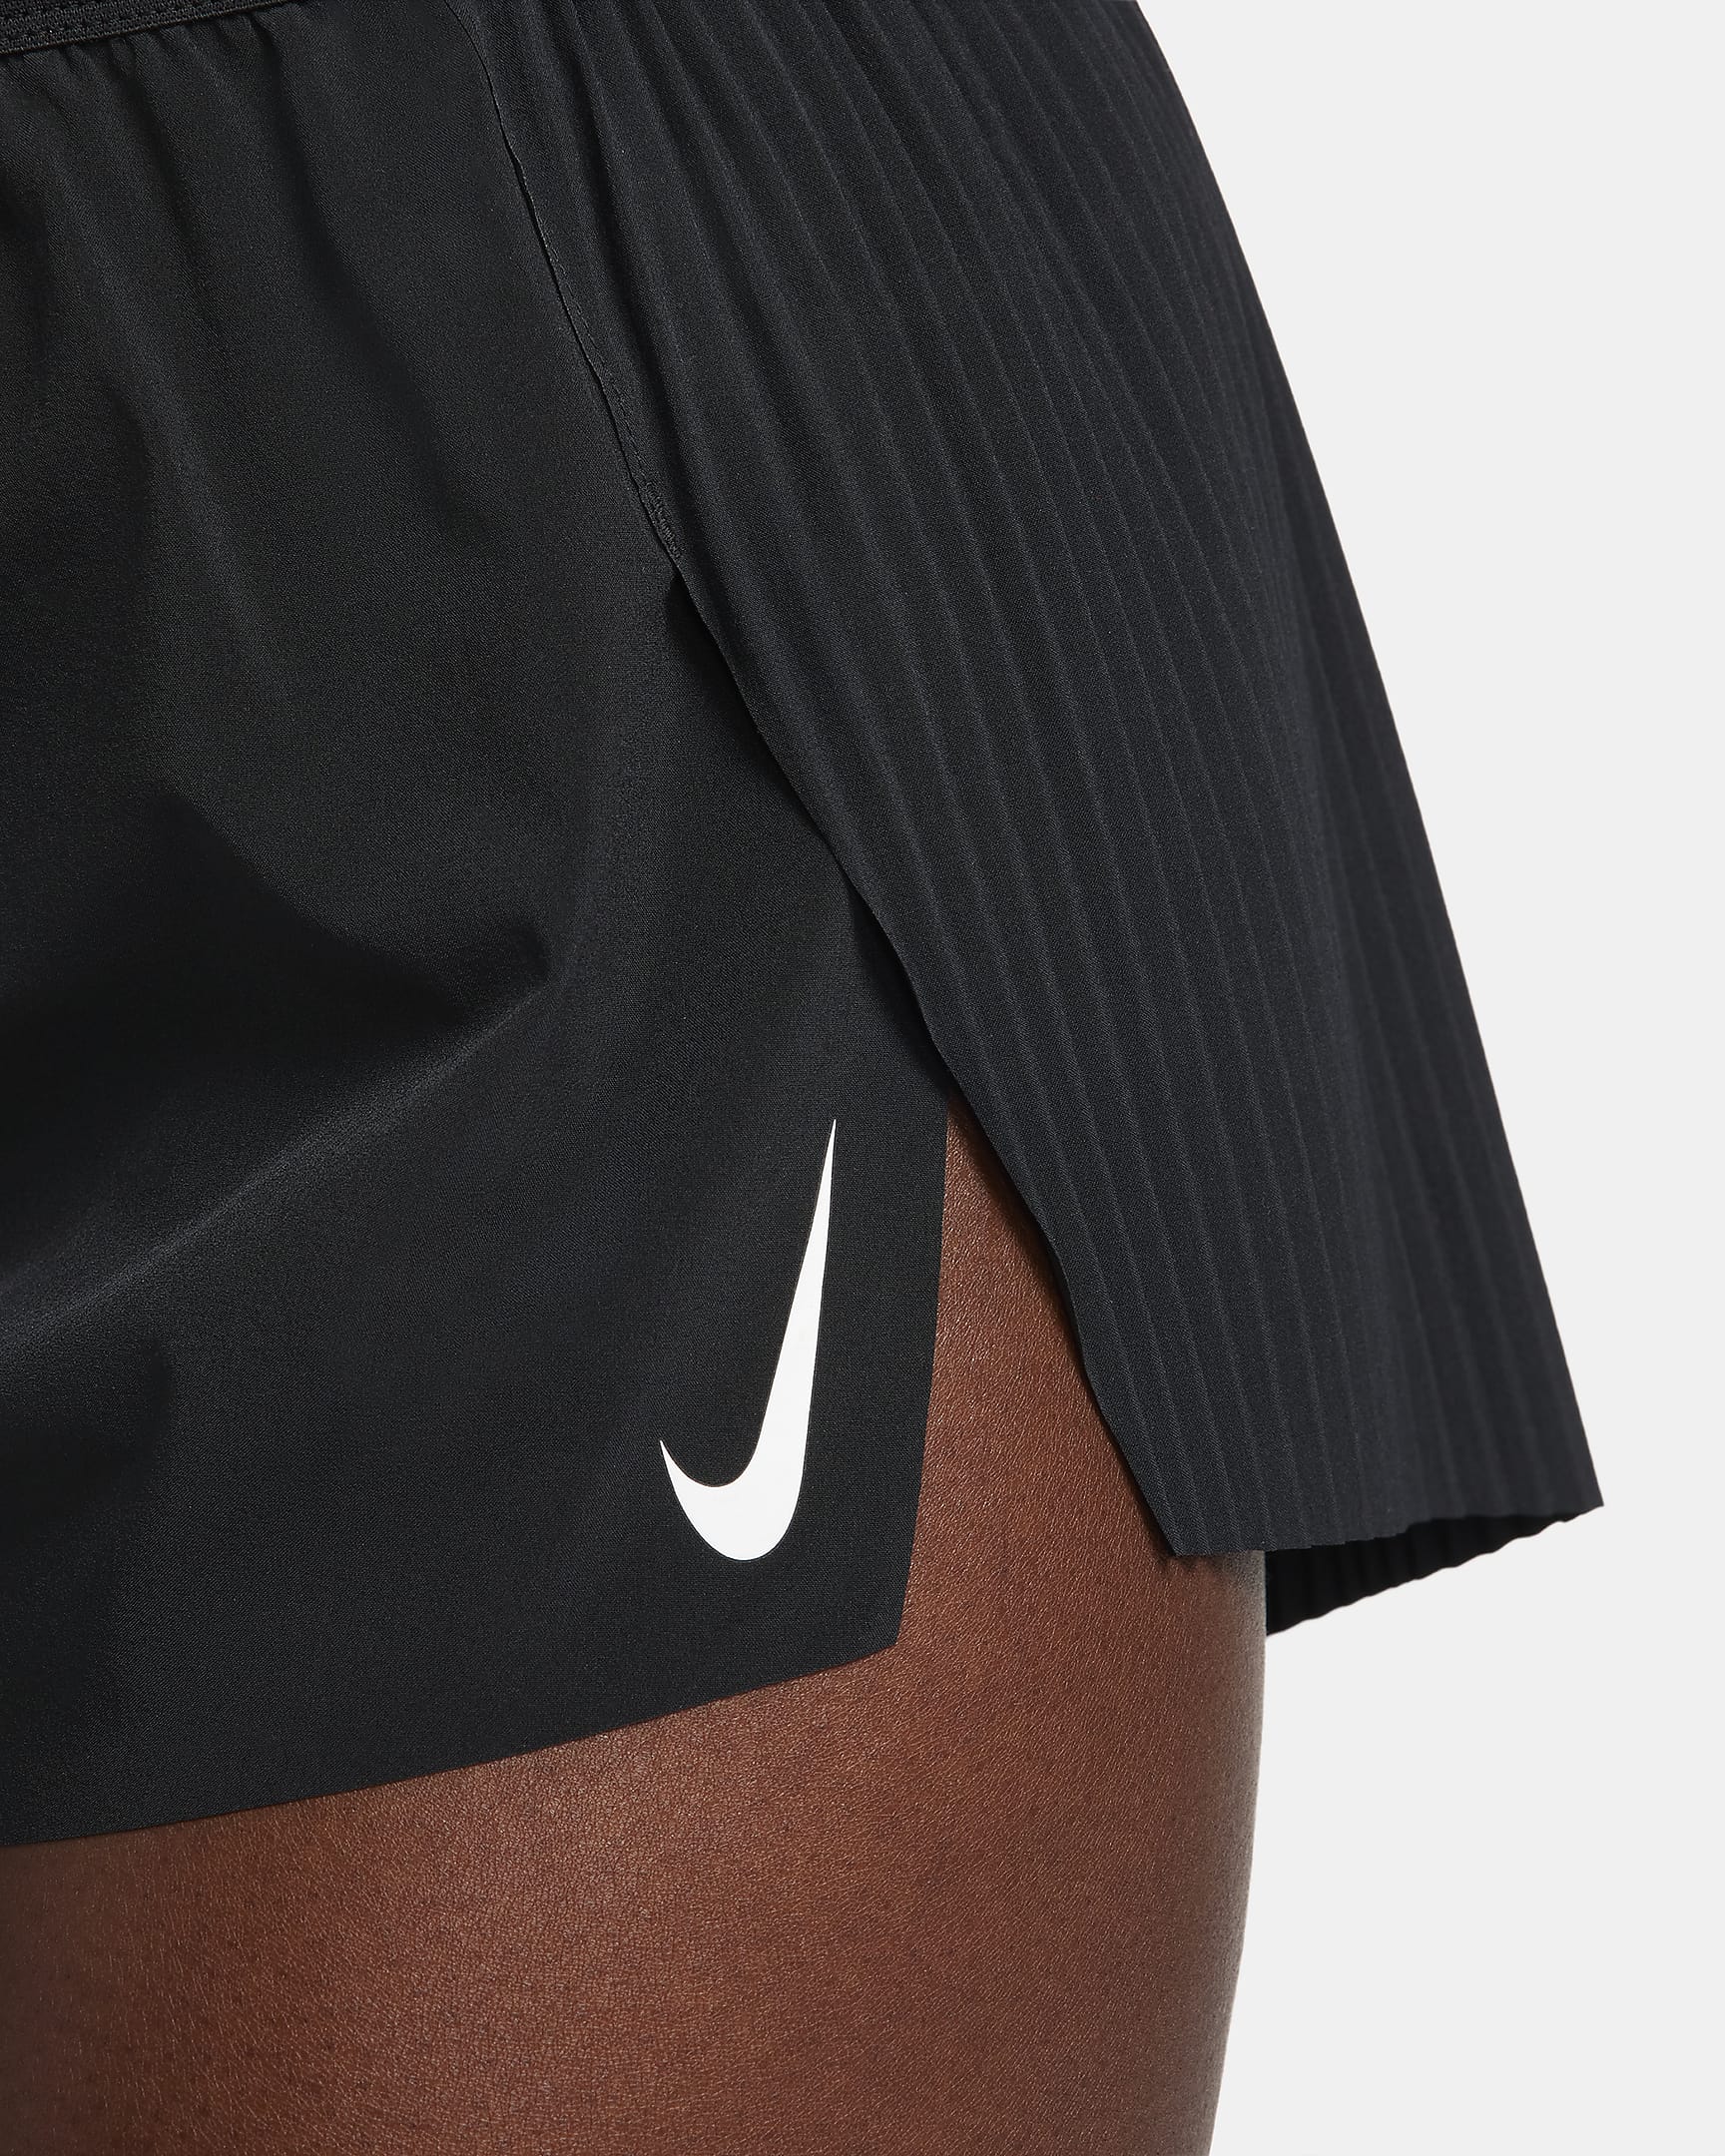 Short de running taille mi-haute avec sous-short intégré Dri-FIT ADV Nike AeroSwift 8 cm pour femme - Noir/Blanc